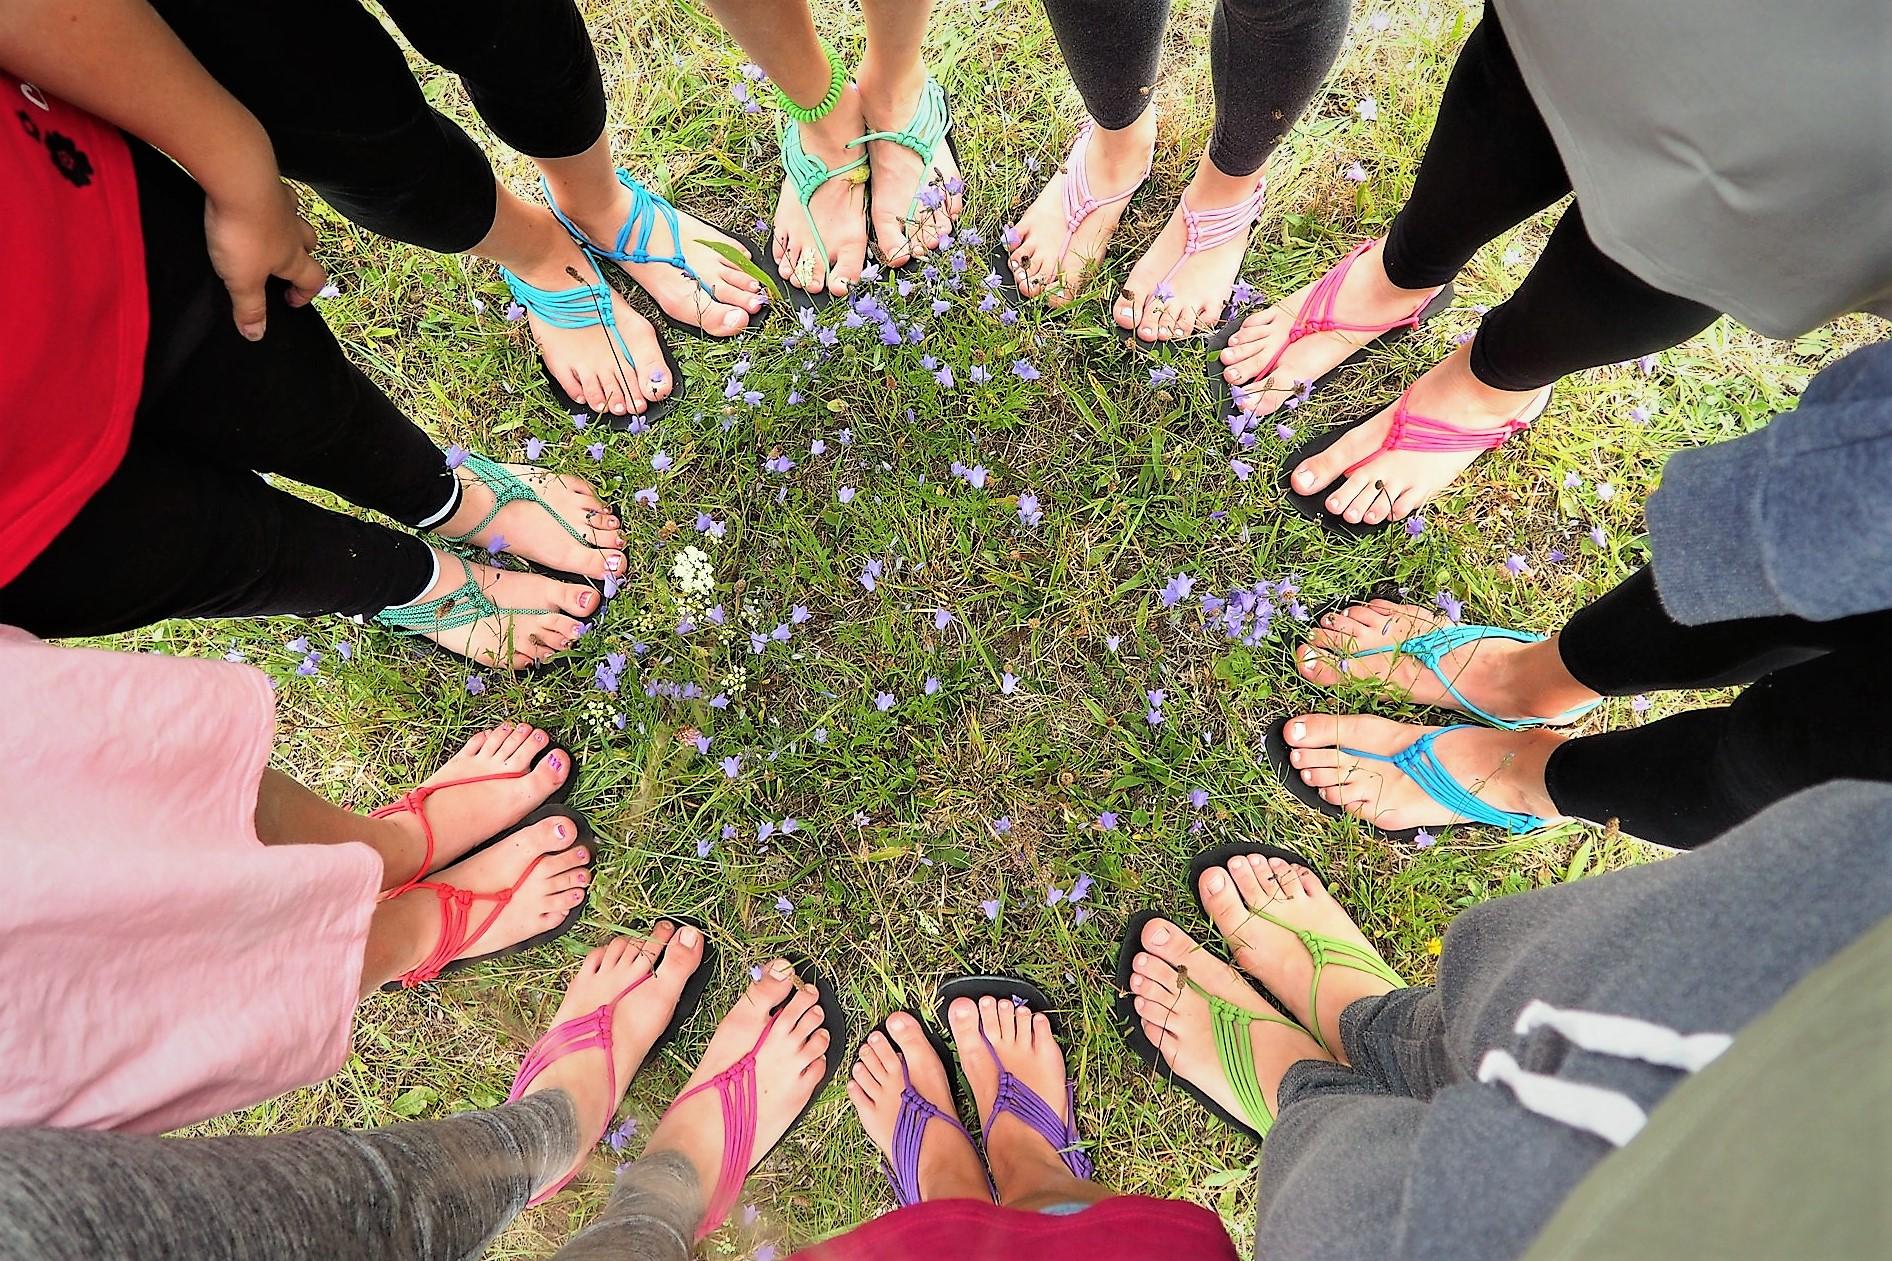 Barefoot sandále (10:00-12:30) - Kreativní den v Lužánkách